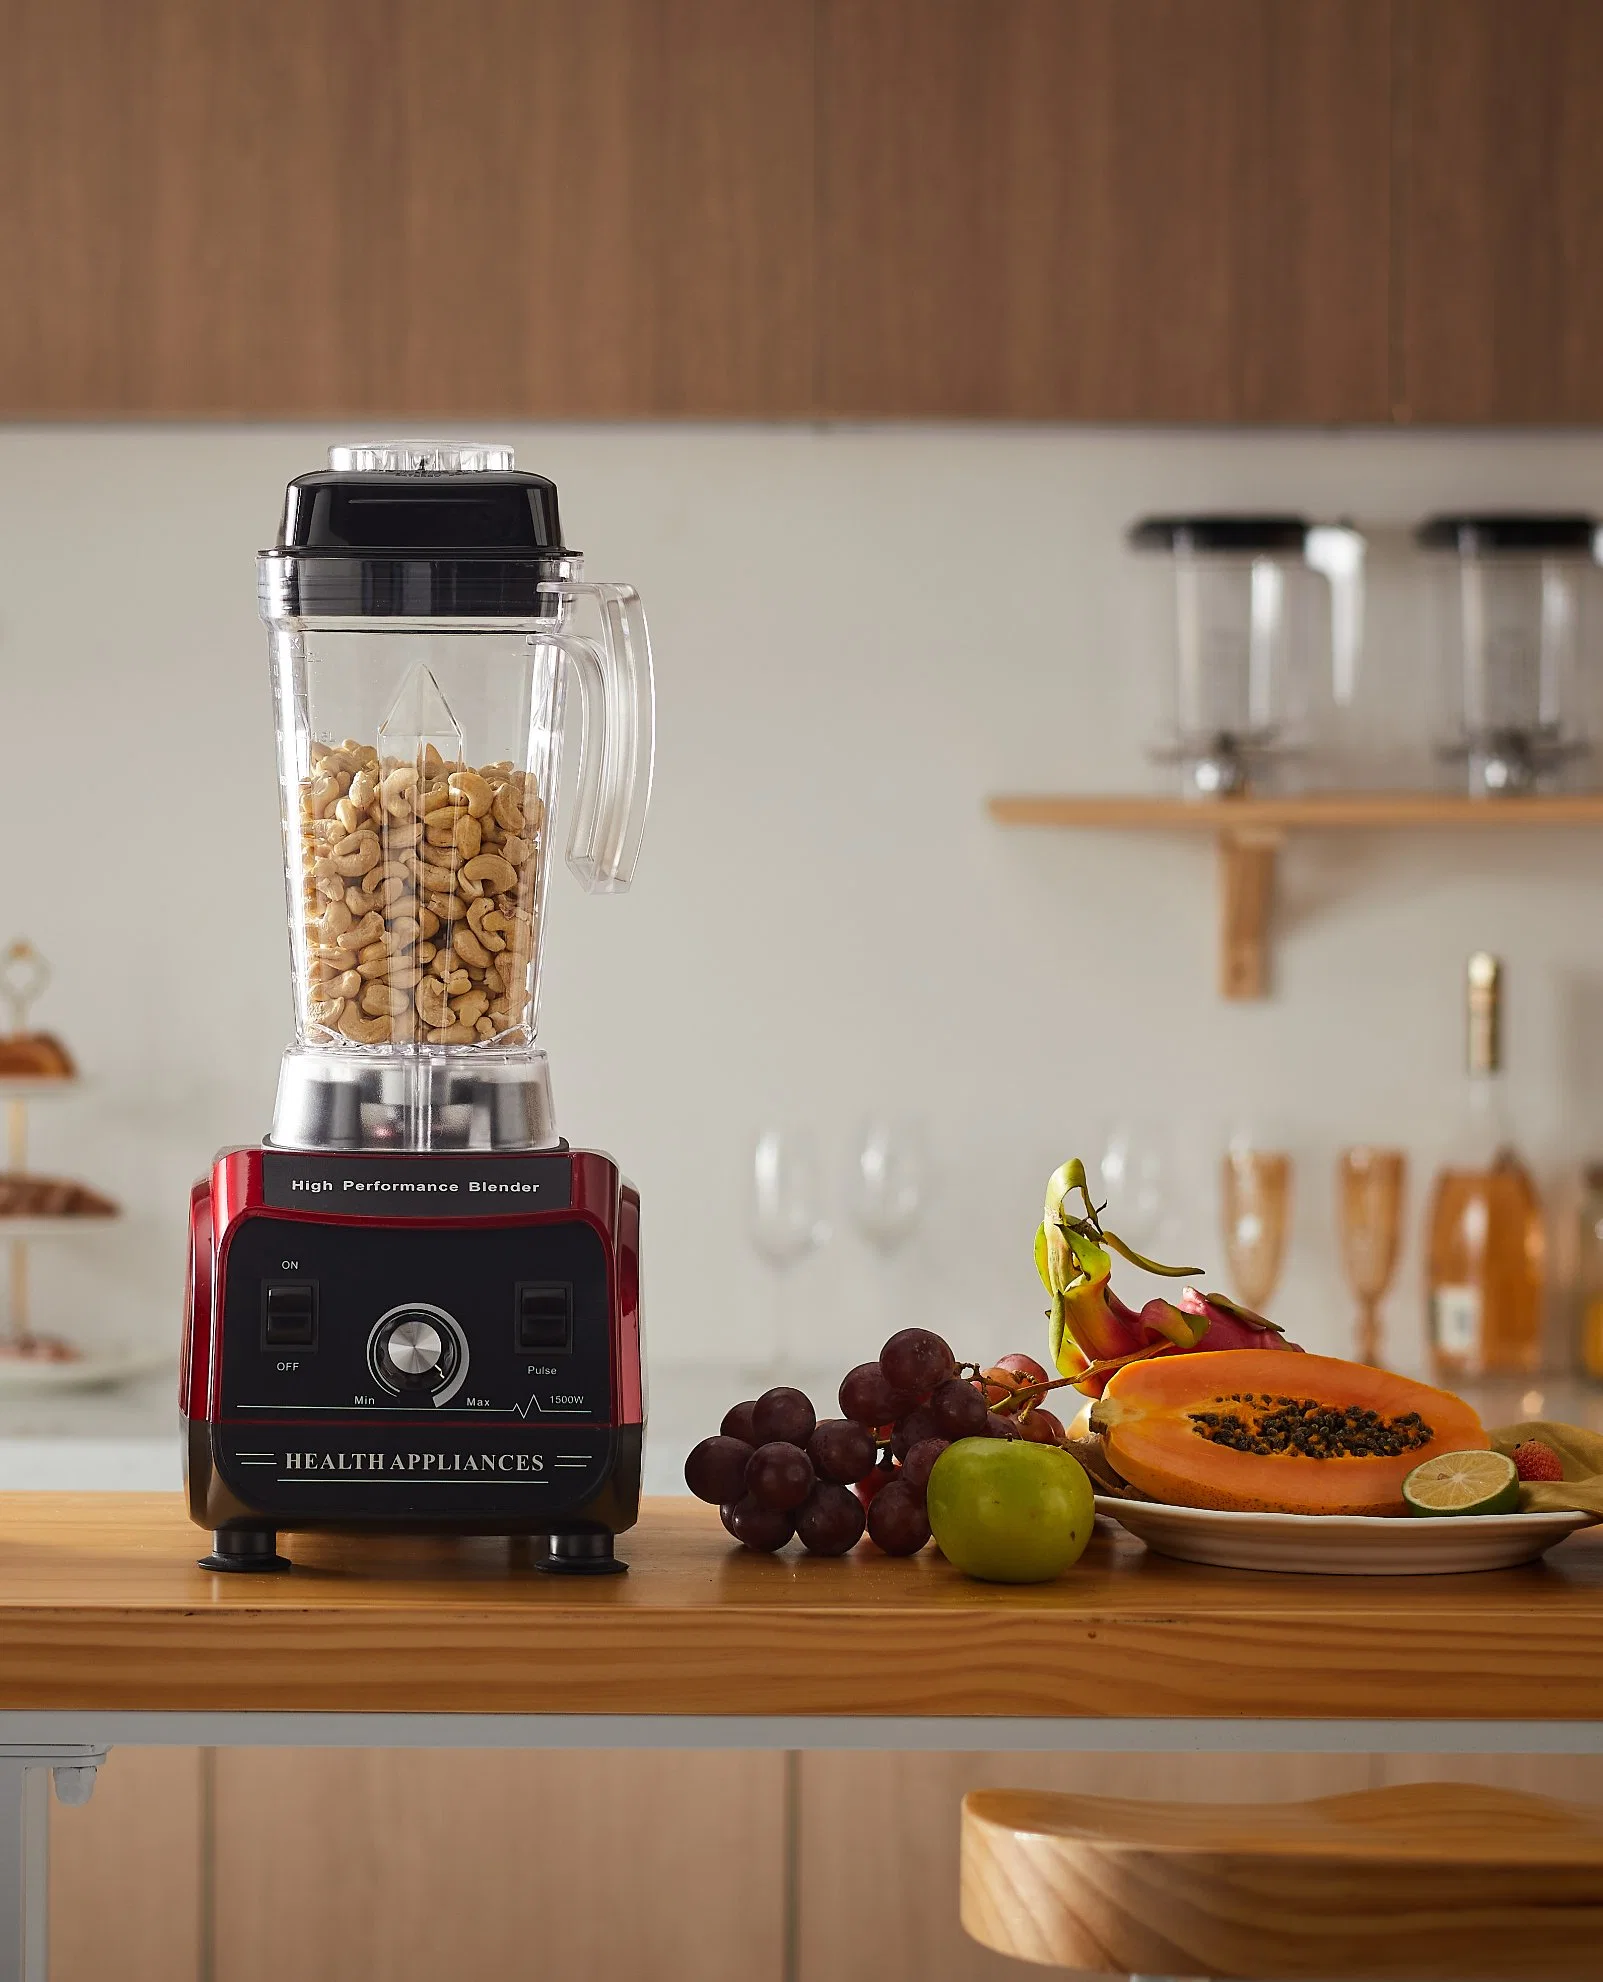 O OEM&amp;Manufacturer Novo Design Digital Eléctrico Liquidificador Smoothie Comercial bebida congelada Juicer tudo em um aparelho de cozinha em casa sem BPA